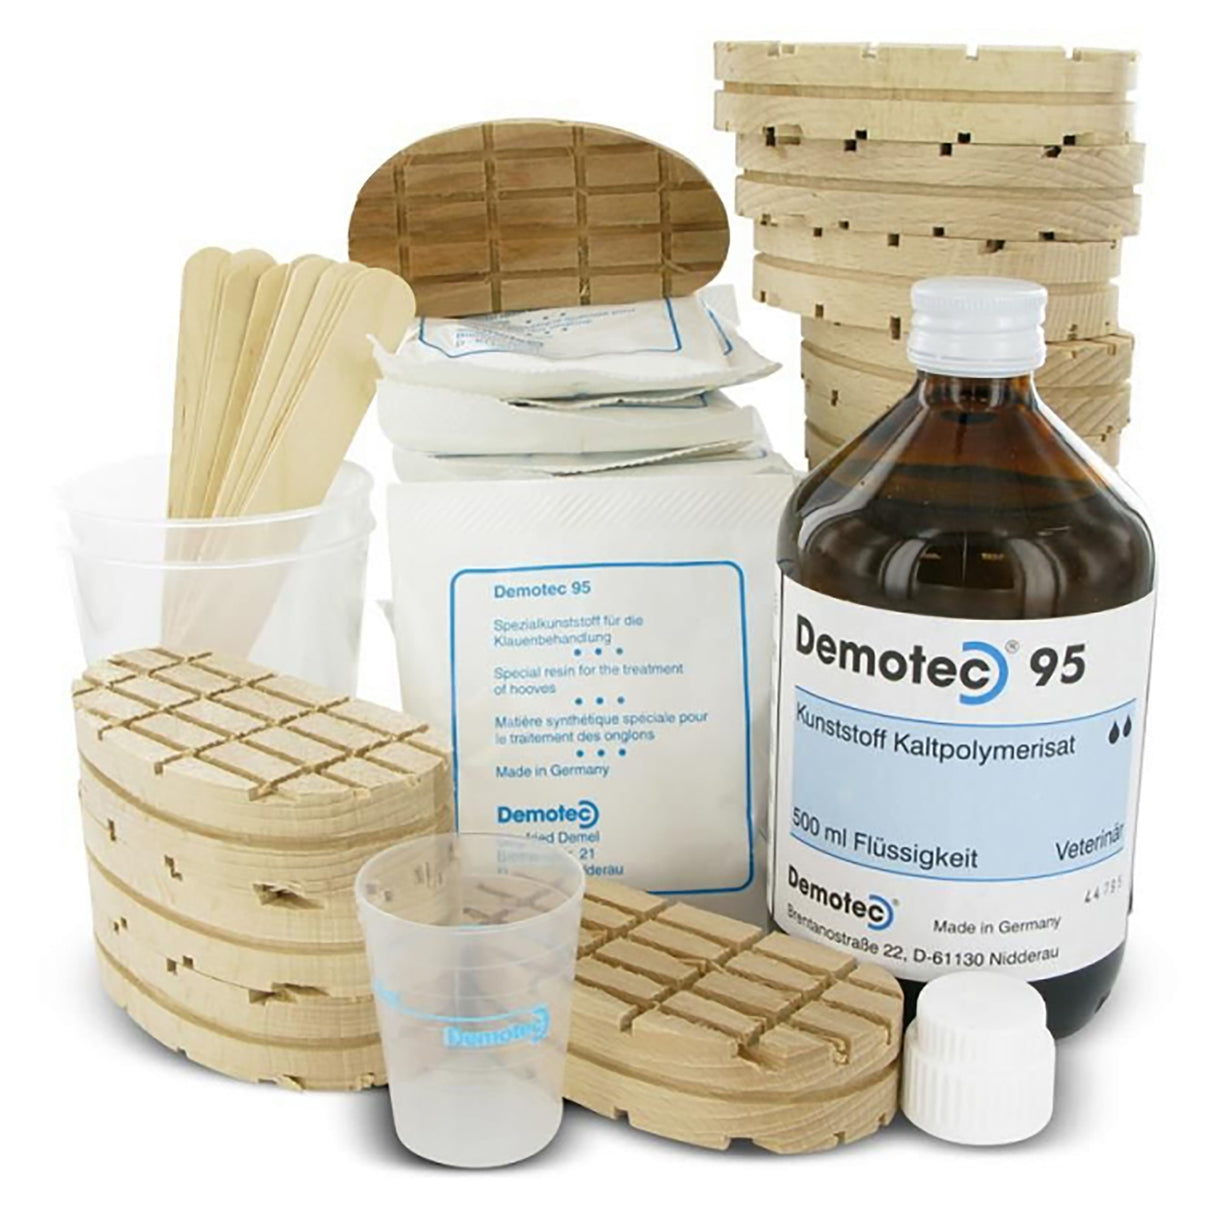 Demotec 95 - 14 set de tratamiento